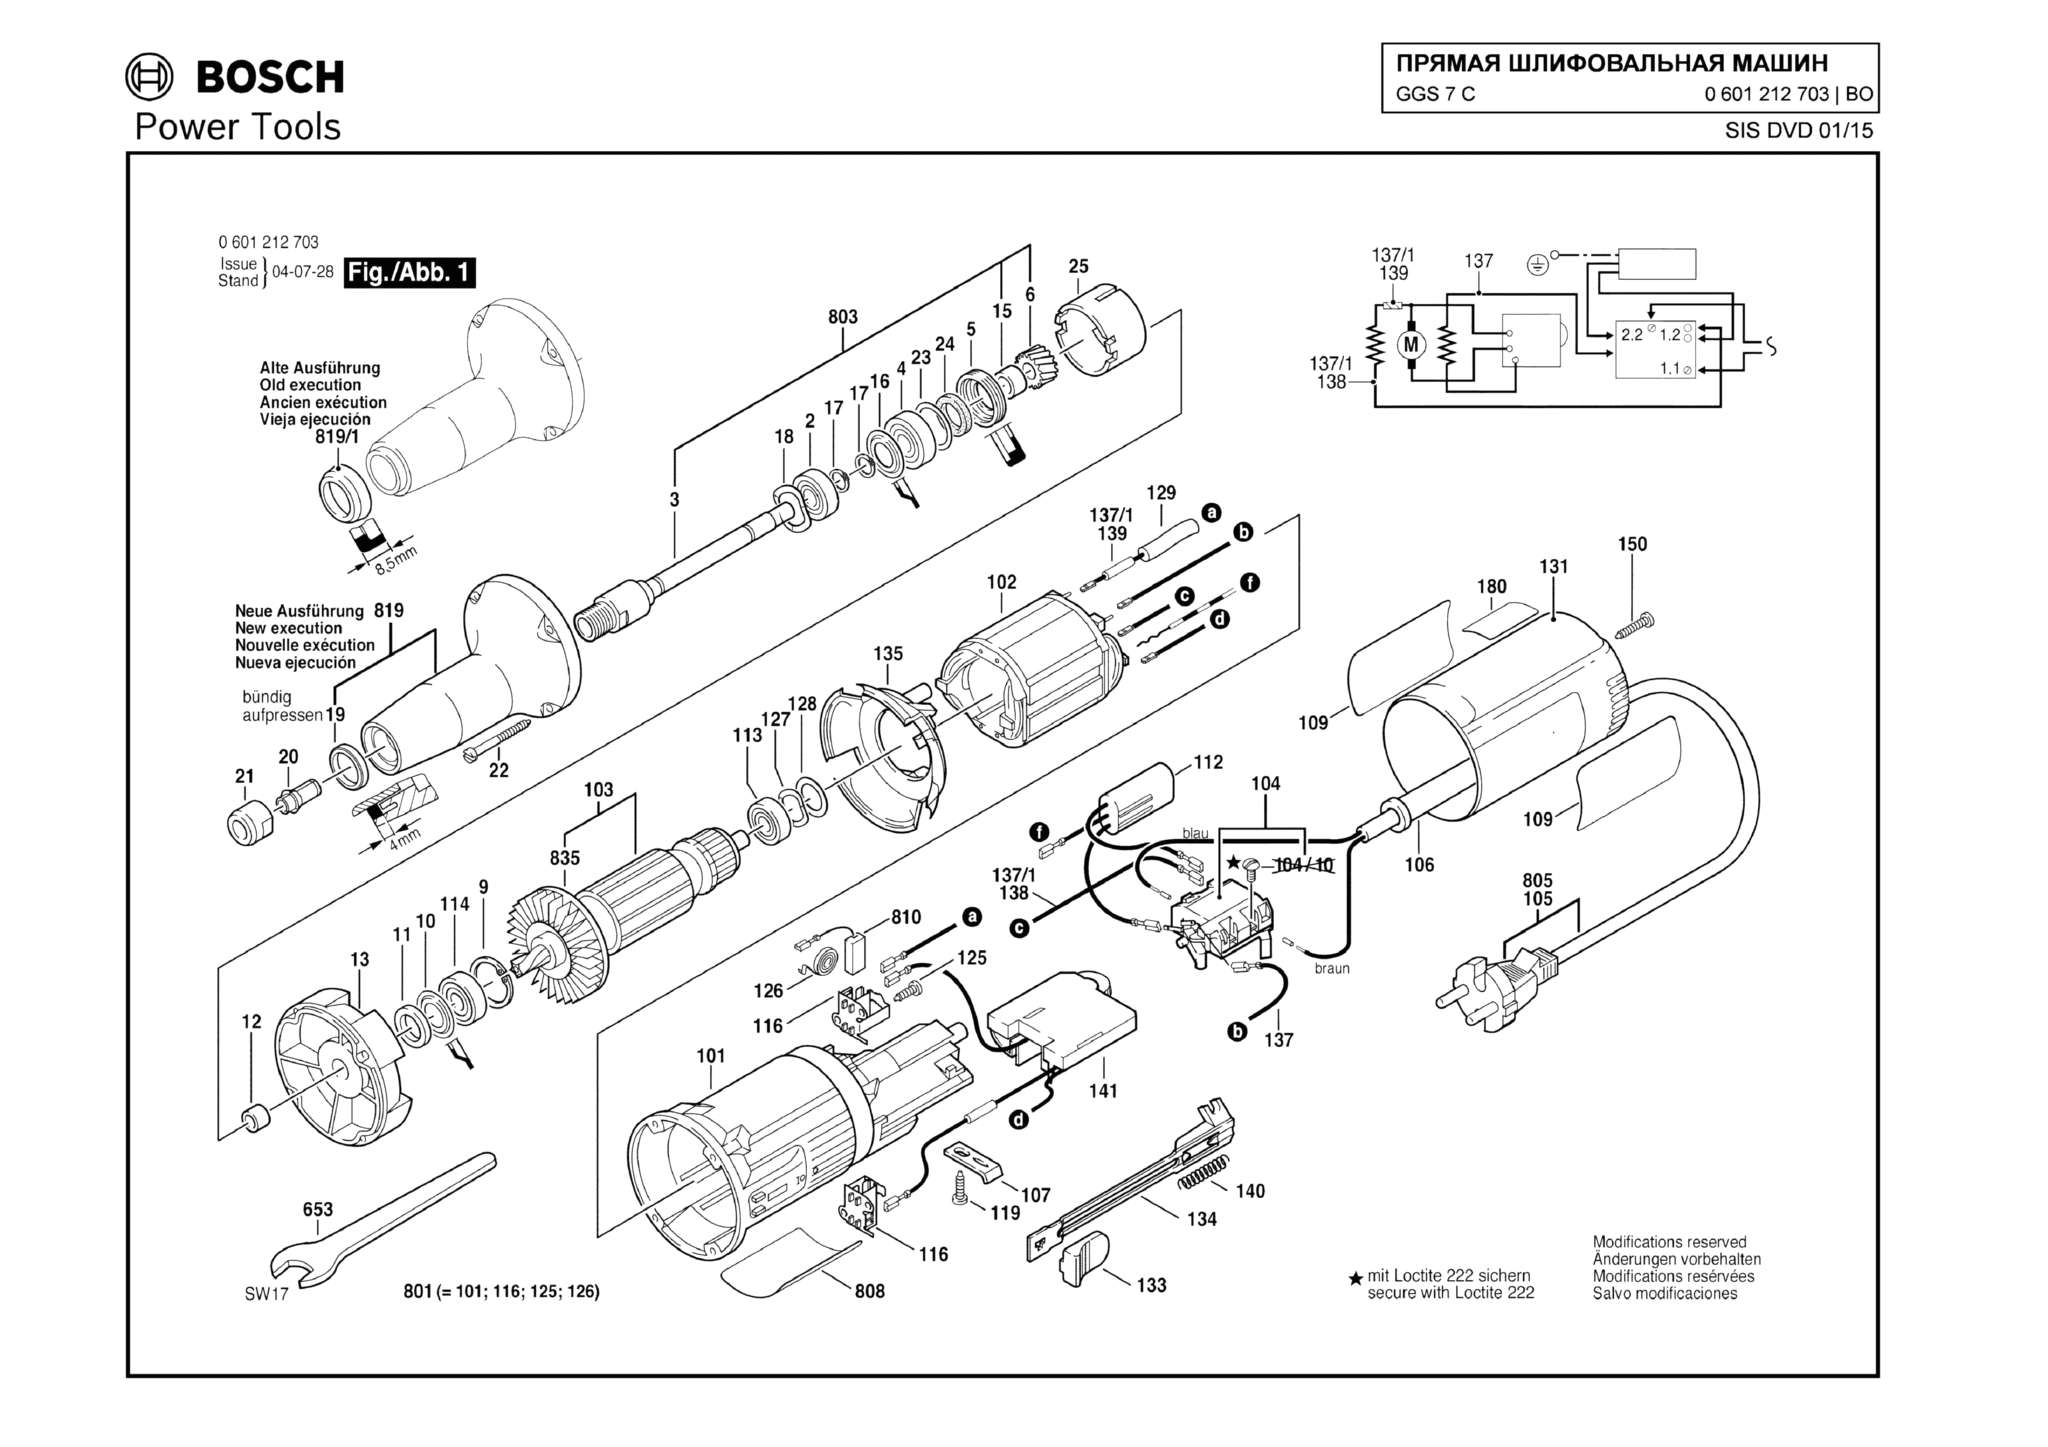 Запчасти, схема и деталировка Bosch GGS 7 C (ТИП 0601212703)